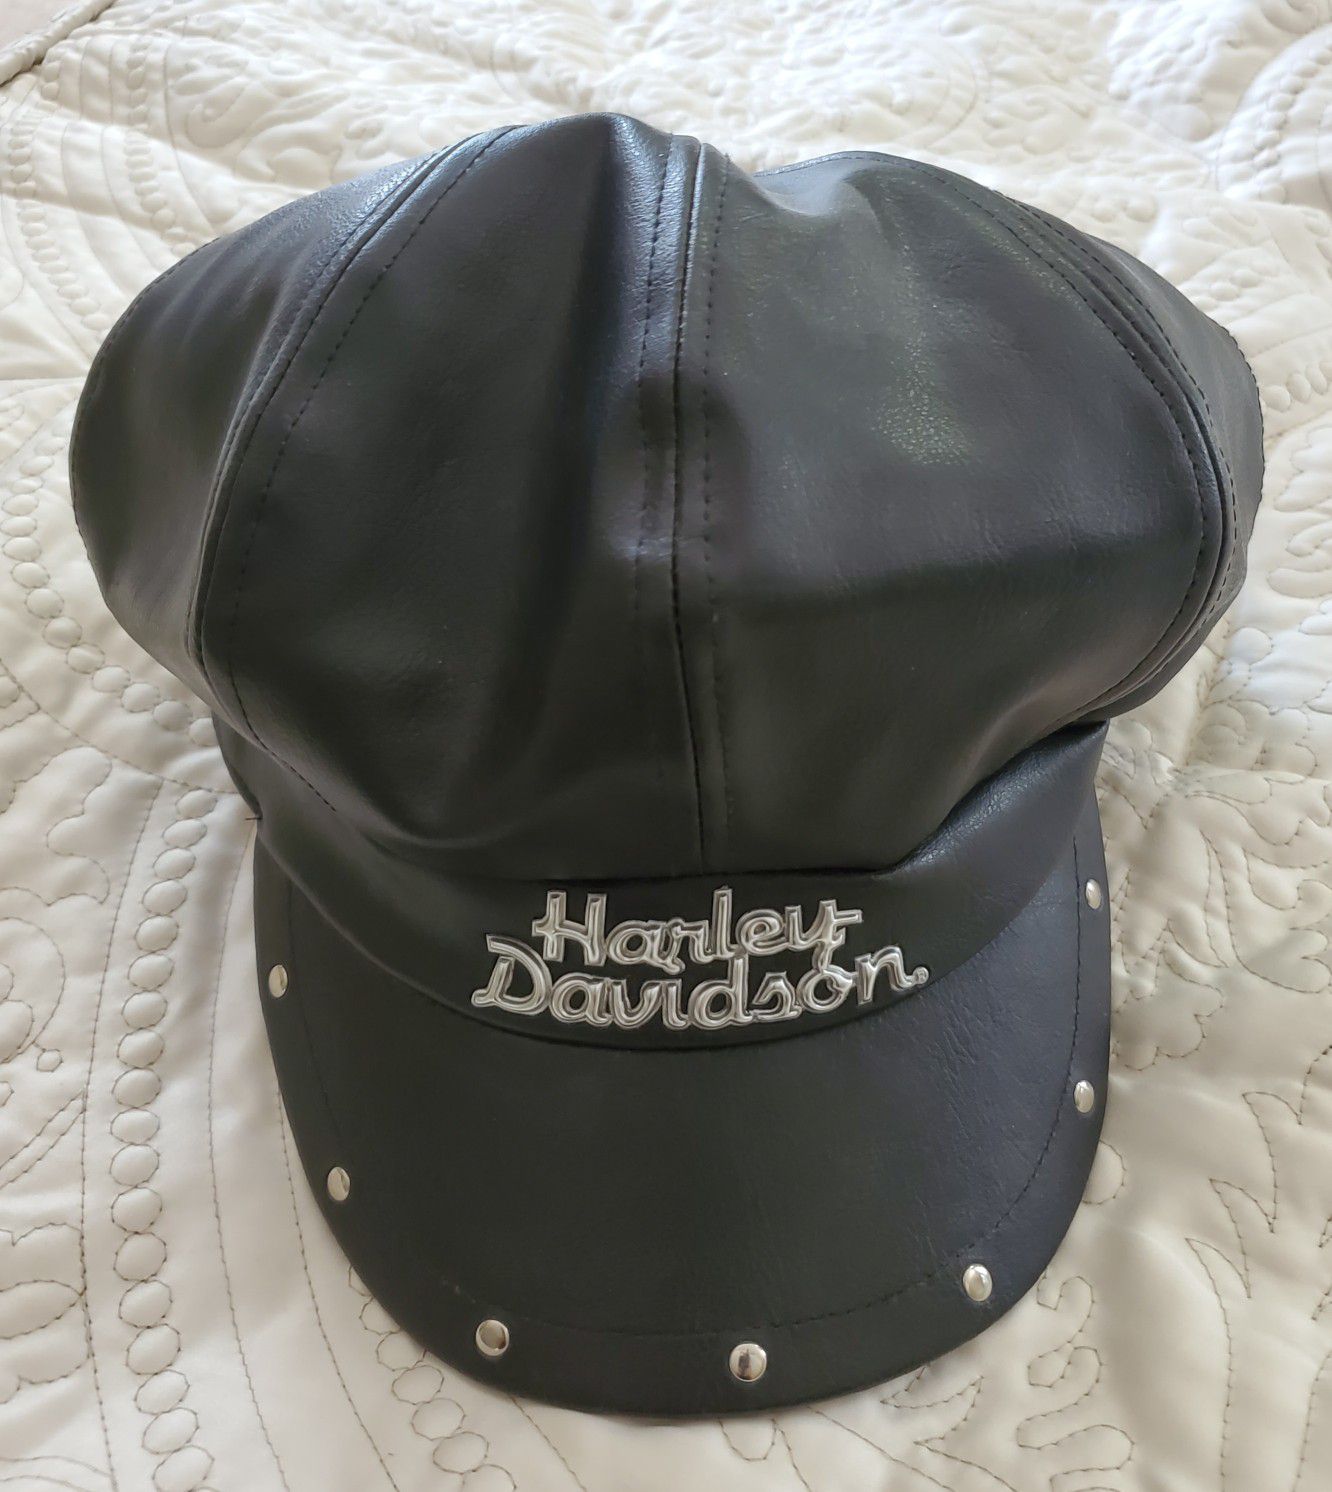 Harley Davidson Leather hat